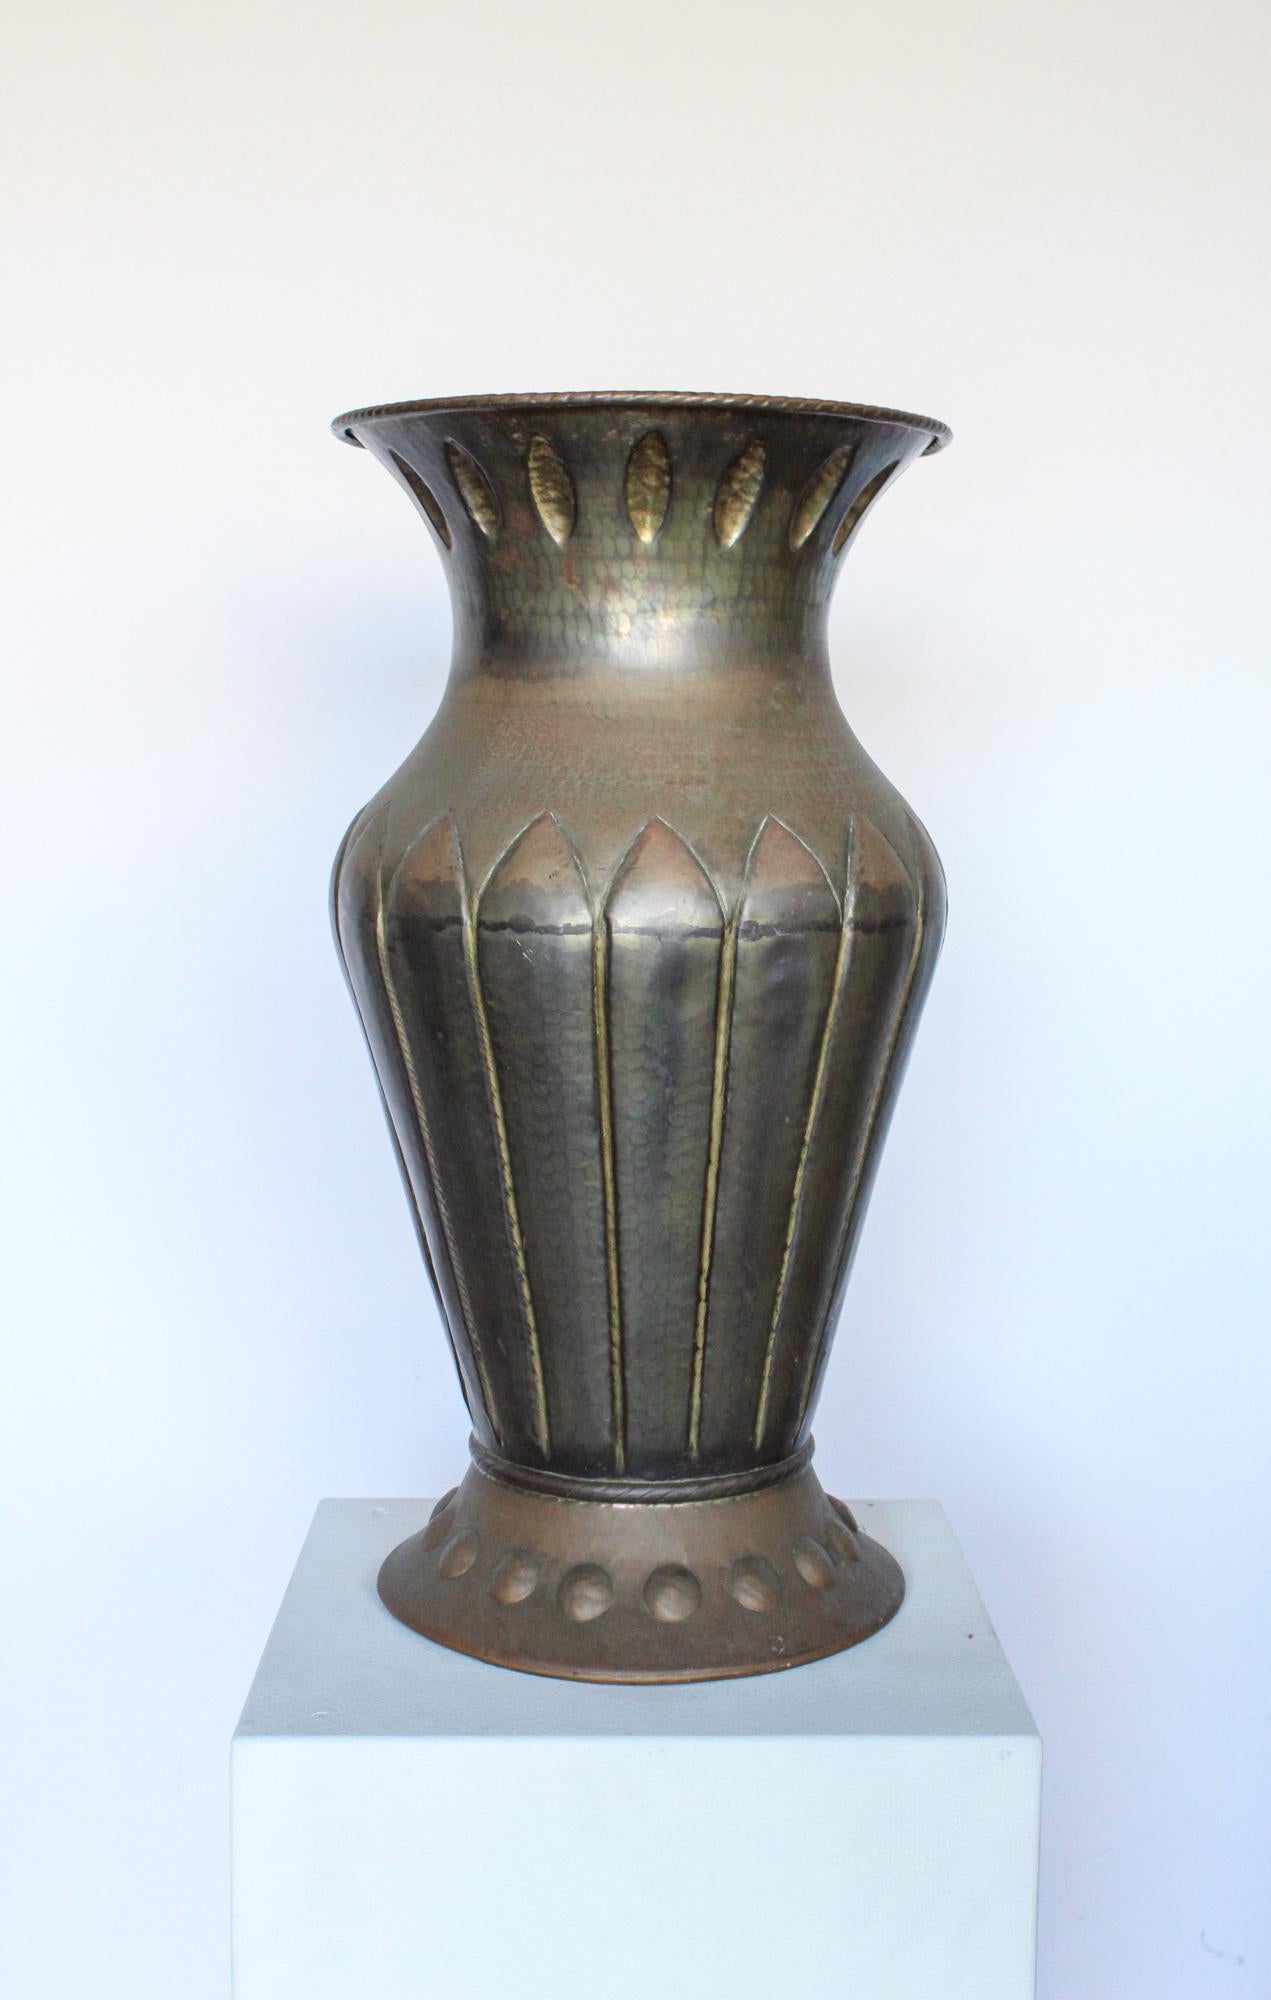 Vase monumental Art Déco en cuivre martelé à la main, fabriqué en Italie, années 1920. Le vase présente une forte ressemblance avec les modèles de Vittorio Zecchin. Nous avons laissé le vase tel qu'il a été trouvé avec une patine incroyable.

Nous